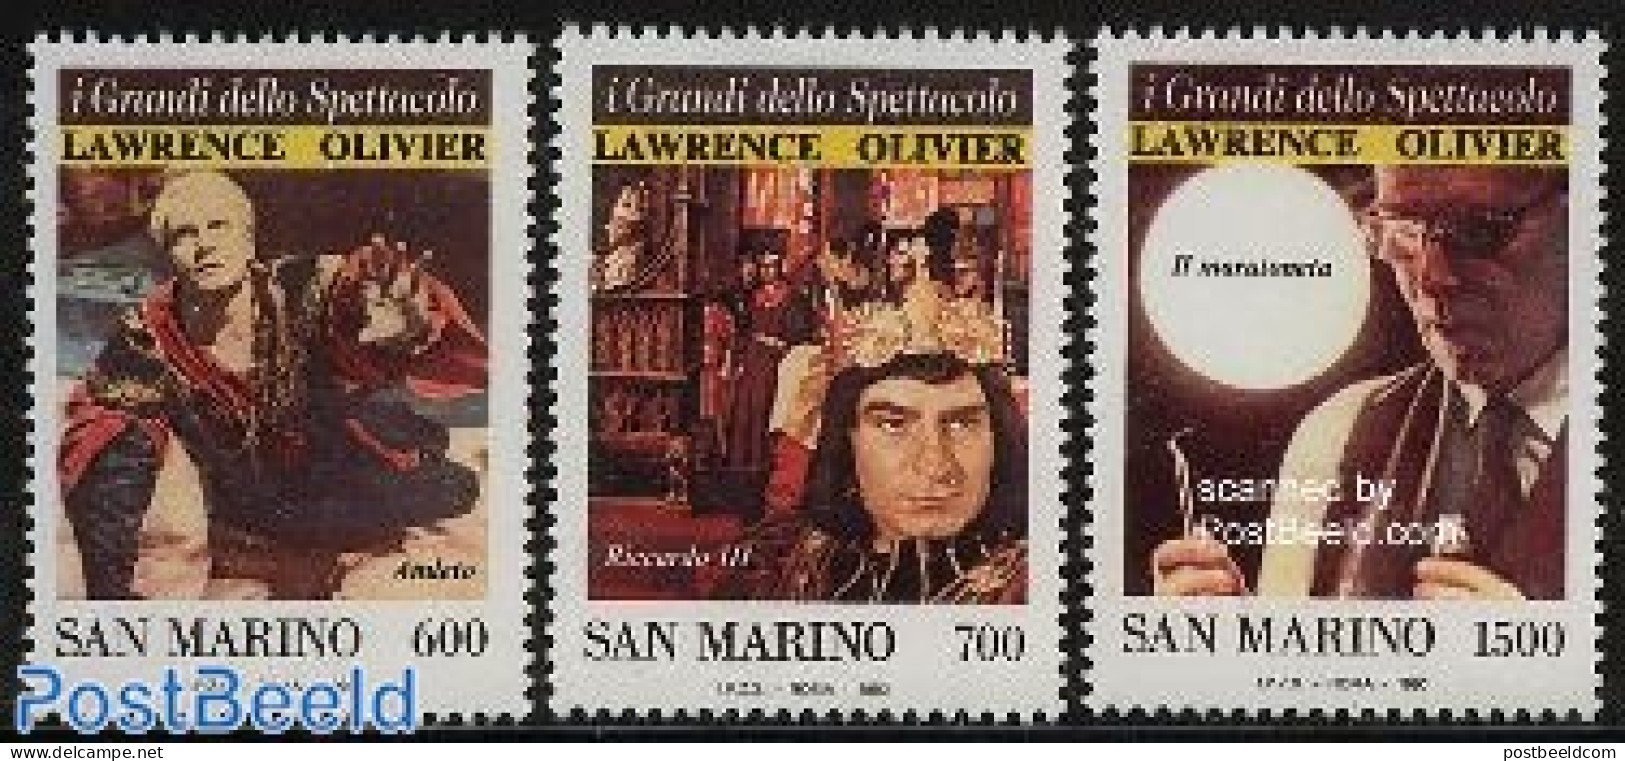 San Marino 1990 I Grandi Della Spettacolo 3v, Mint NH, Performance Art - Theatre - Nuovi